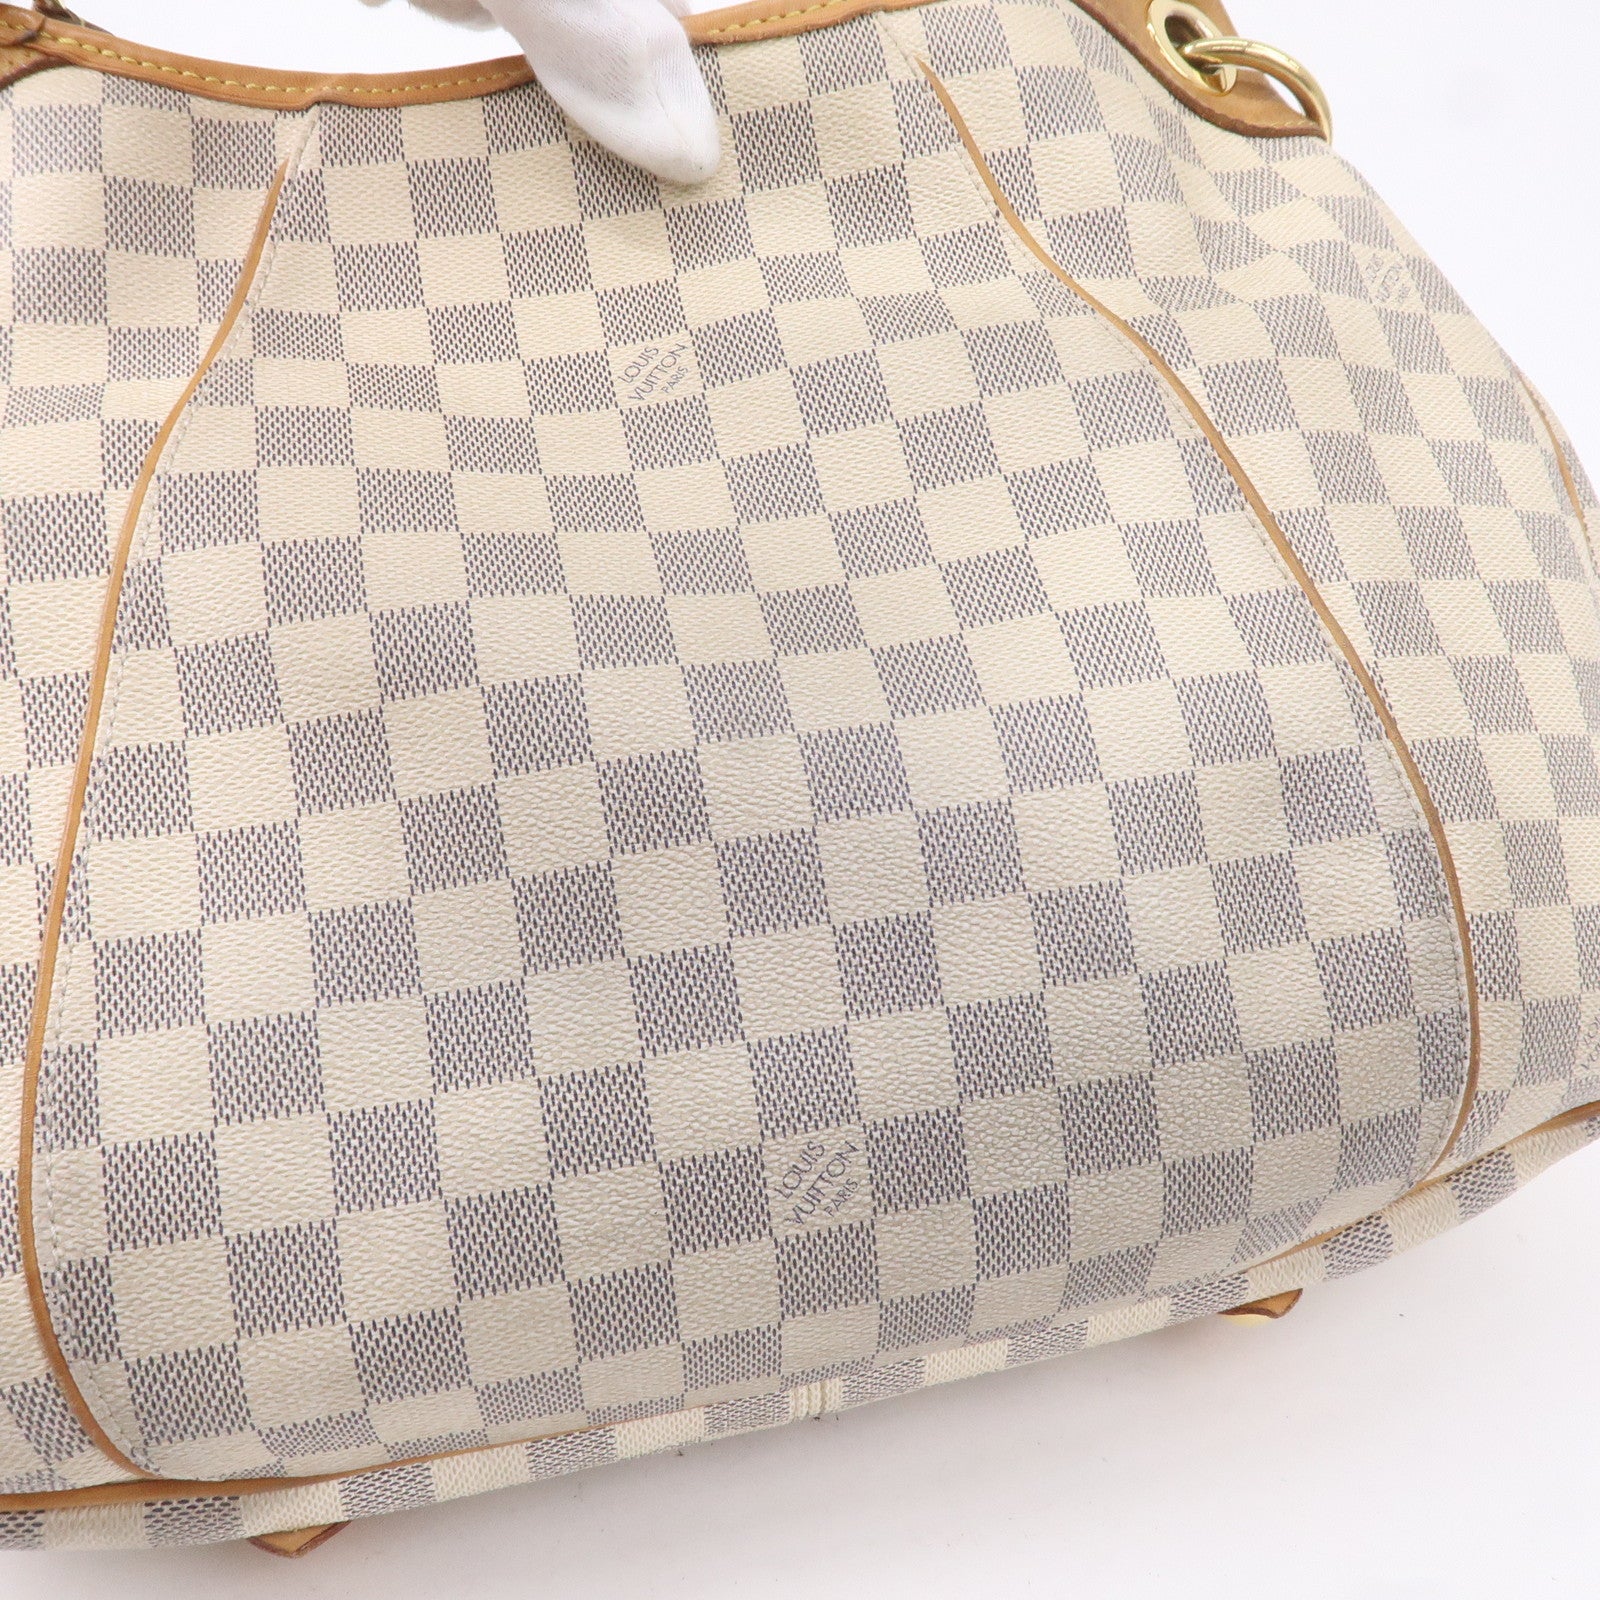 *Pre-Owned Louis Vuitton Galliera Pm White Damier Azur Canvas Shoulder Bag